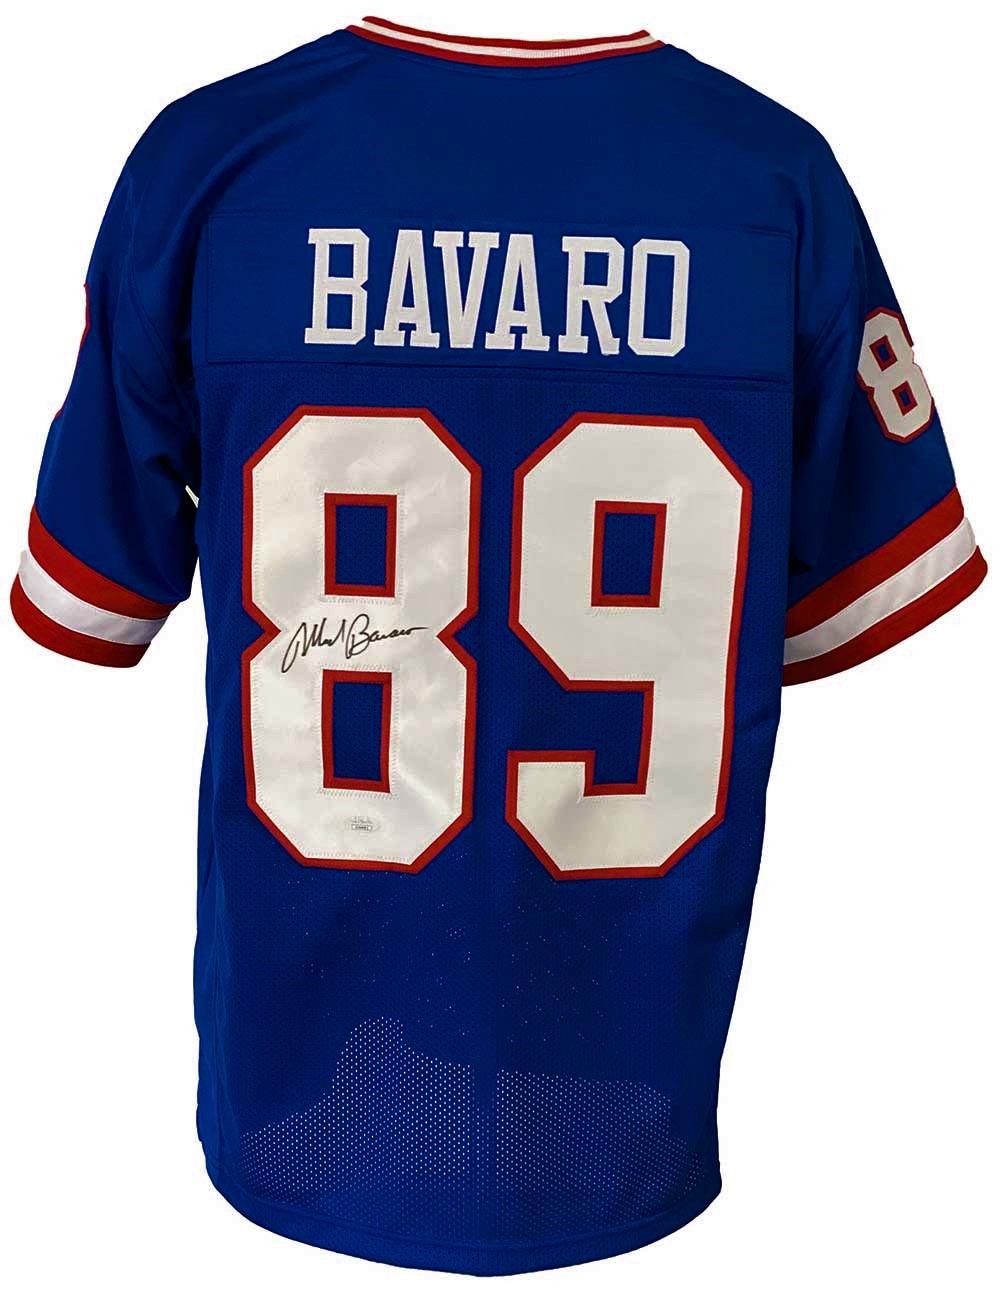 mark bavaro signed jersey